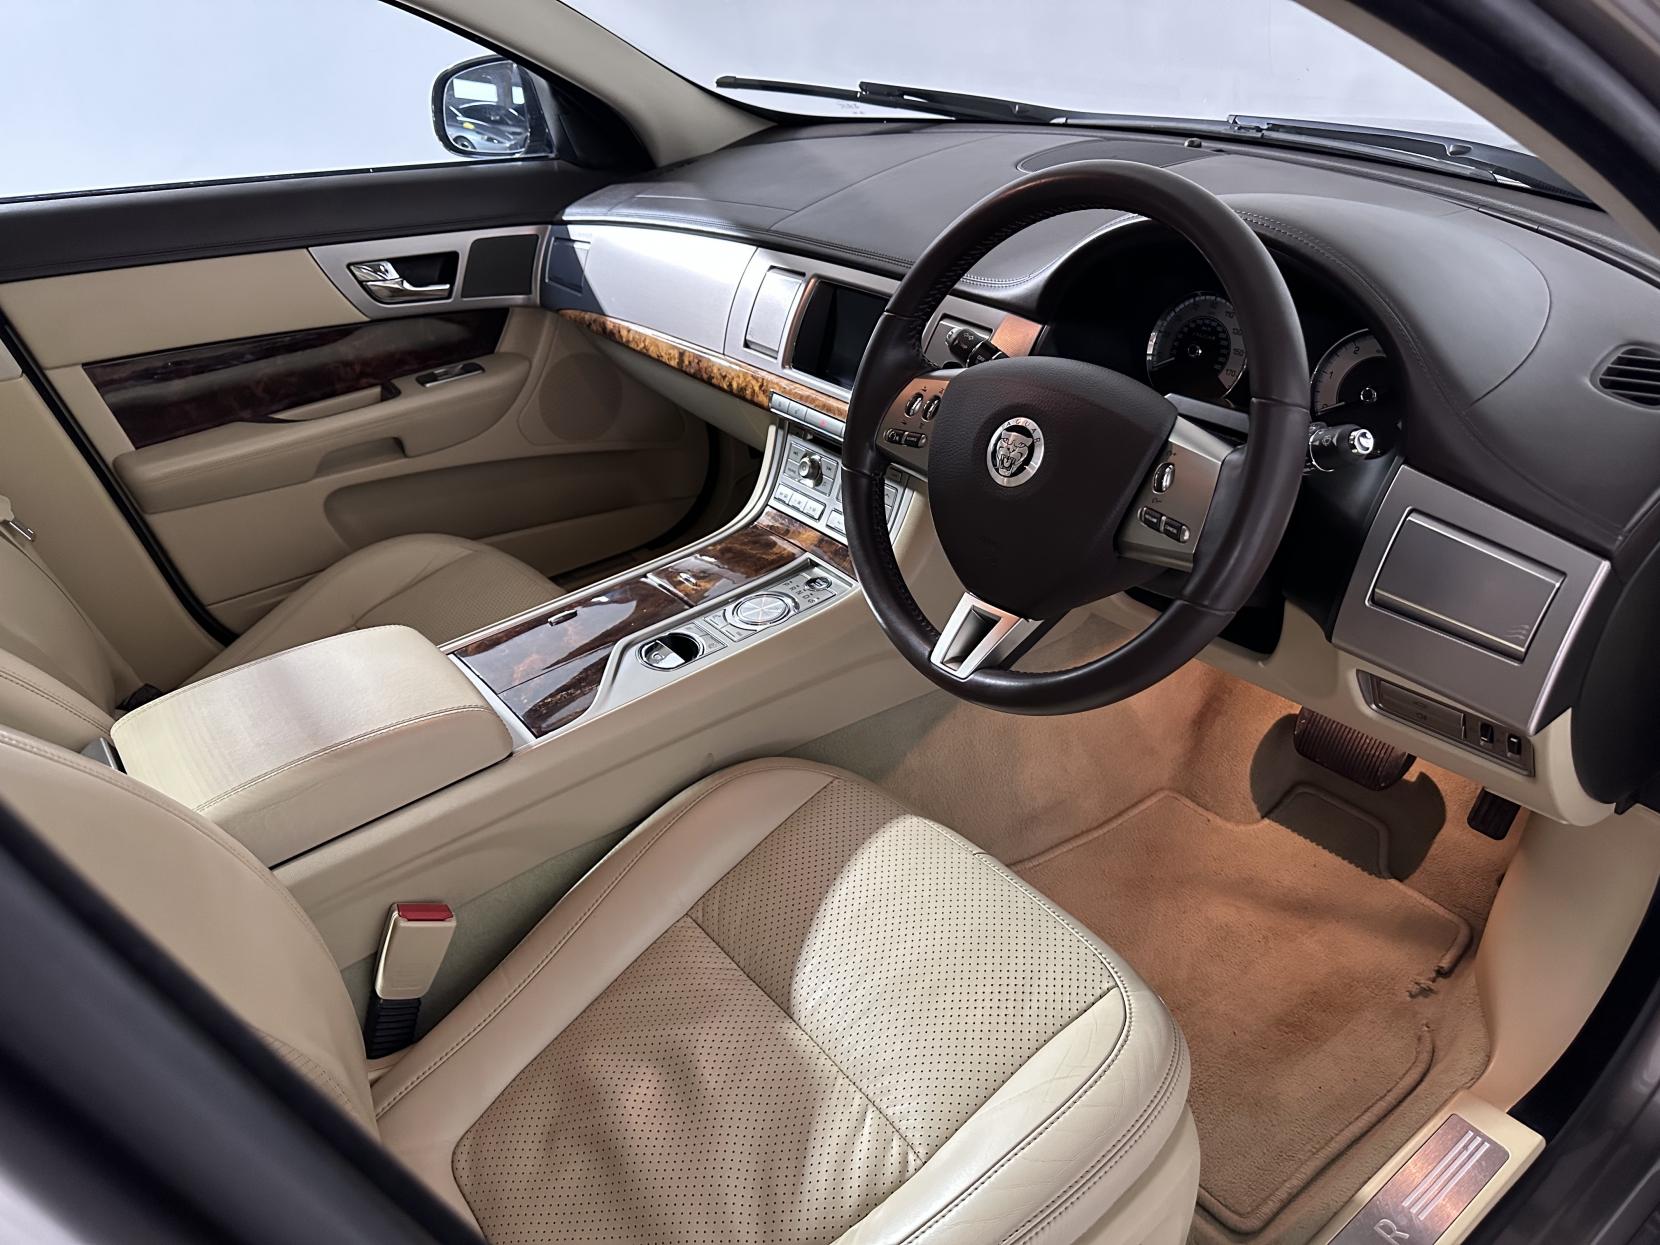 Jaguar XF 3.0d V6 Premium Luxury Saloon 4dr Diesel Auto Euro 5 (240 ps)